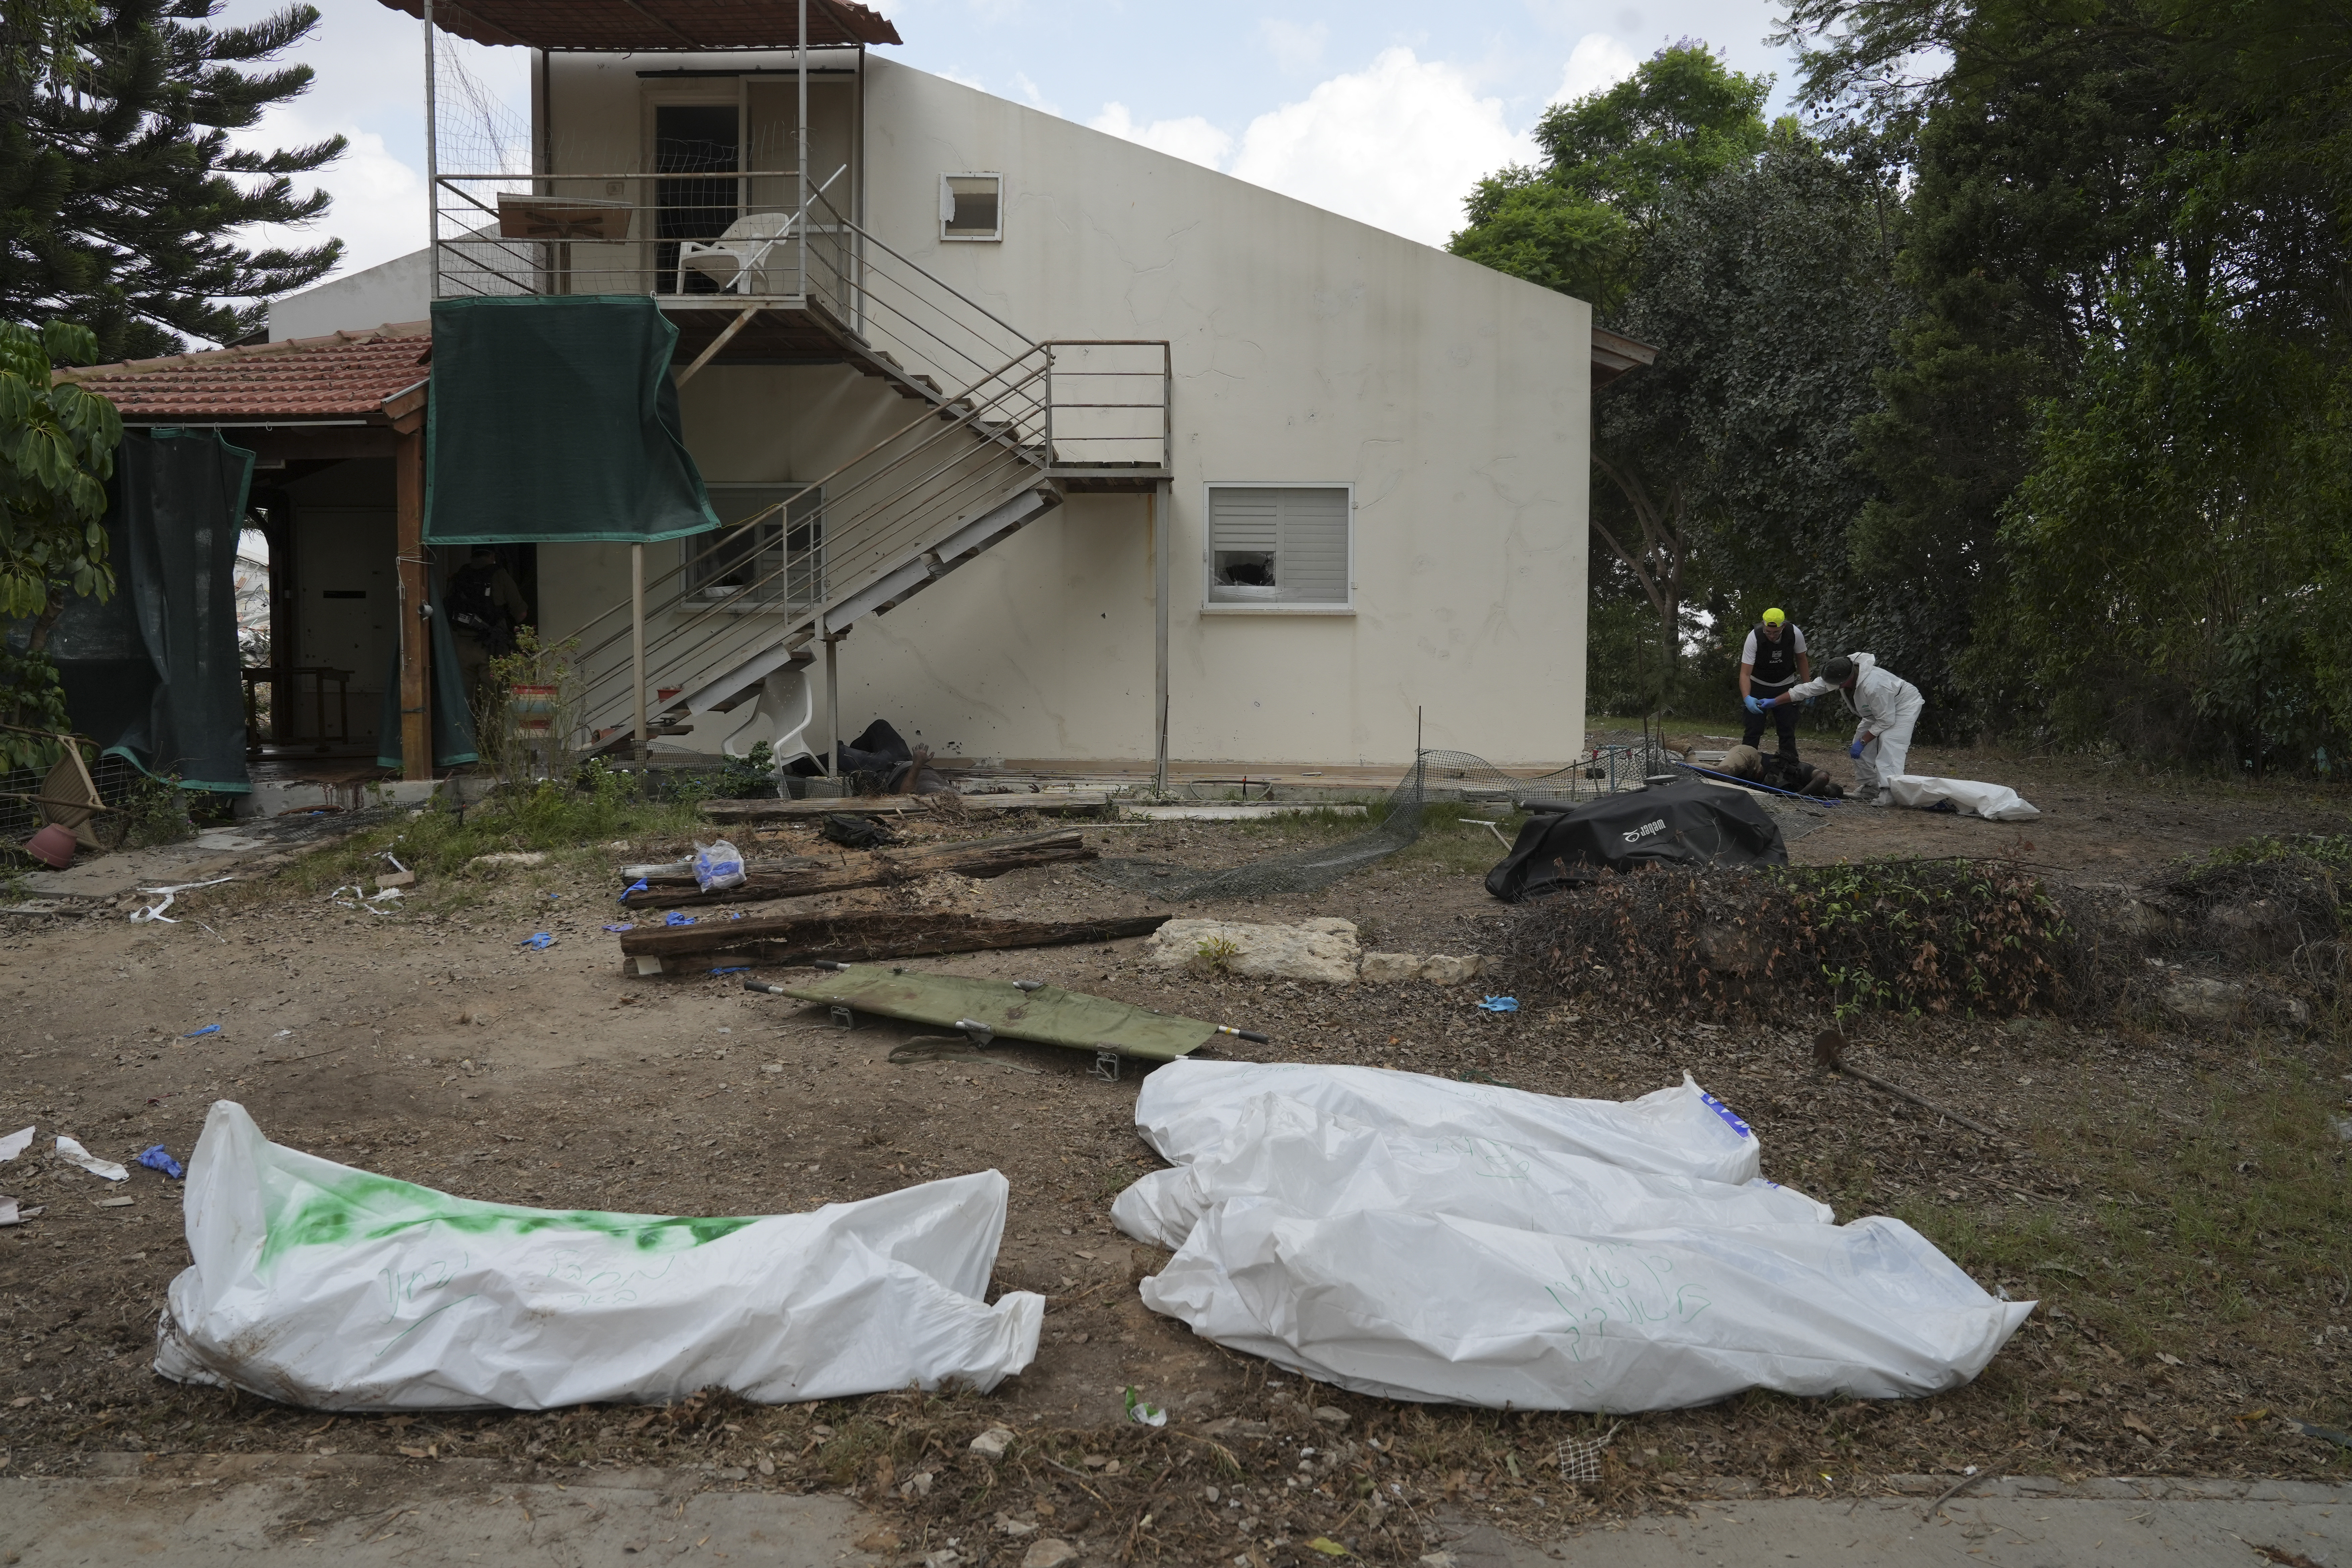 Leichensäcke vor einem Haus, nachdem es schließlich von israelischen Streitkräften befreit wurde